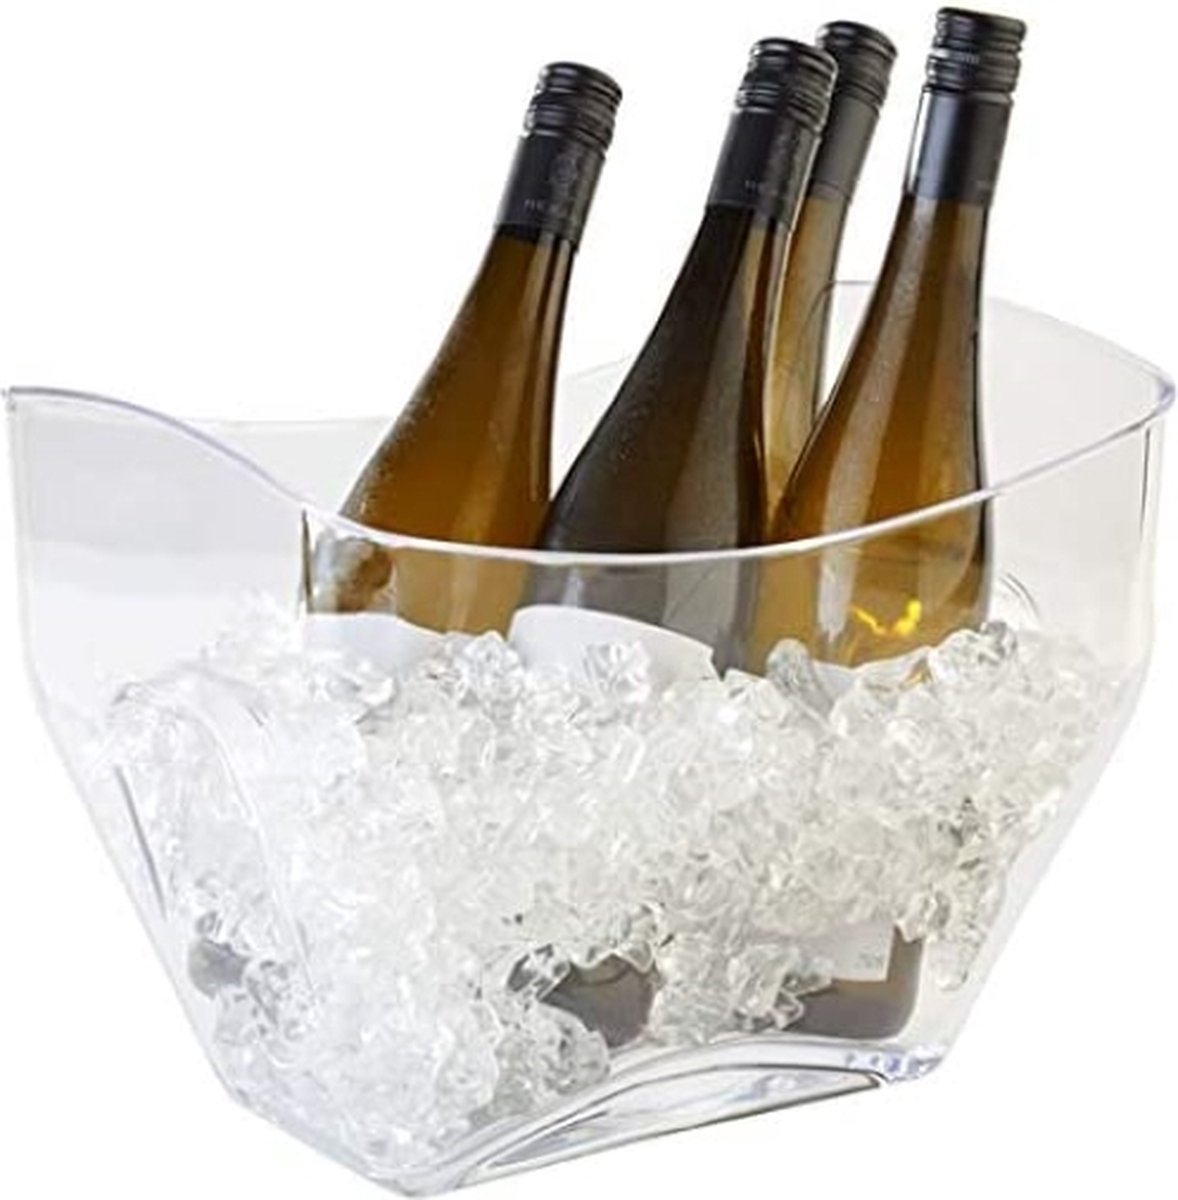 Wijnkoeler, champagnekoeler, hoogwaardige flessenkoeler van helder transparant MS - kunststof met handgrepen aan de zijkant, inhoud 7 liter, waterdicht - afwasbaar.